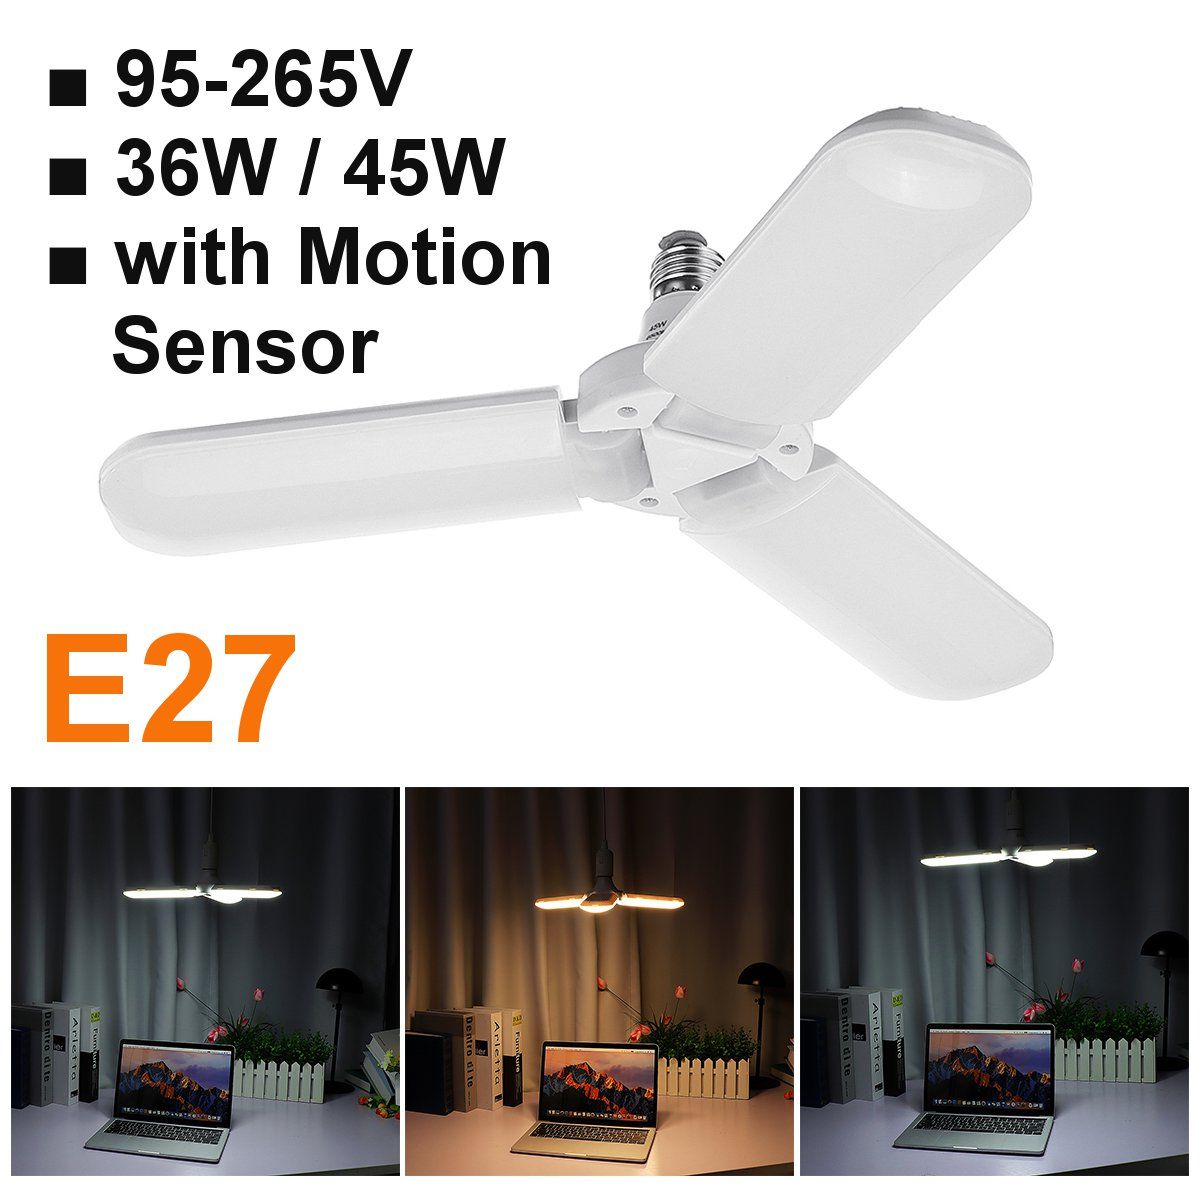 36W-45W-3Blades-Folding-E27-Motion-Sensor-LED-Bulb-Pendant-Lamp-Decor-AC95-265V-1636885